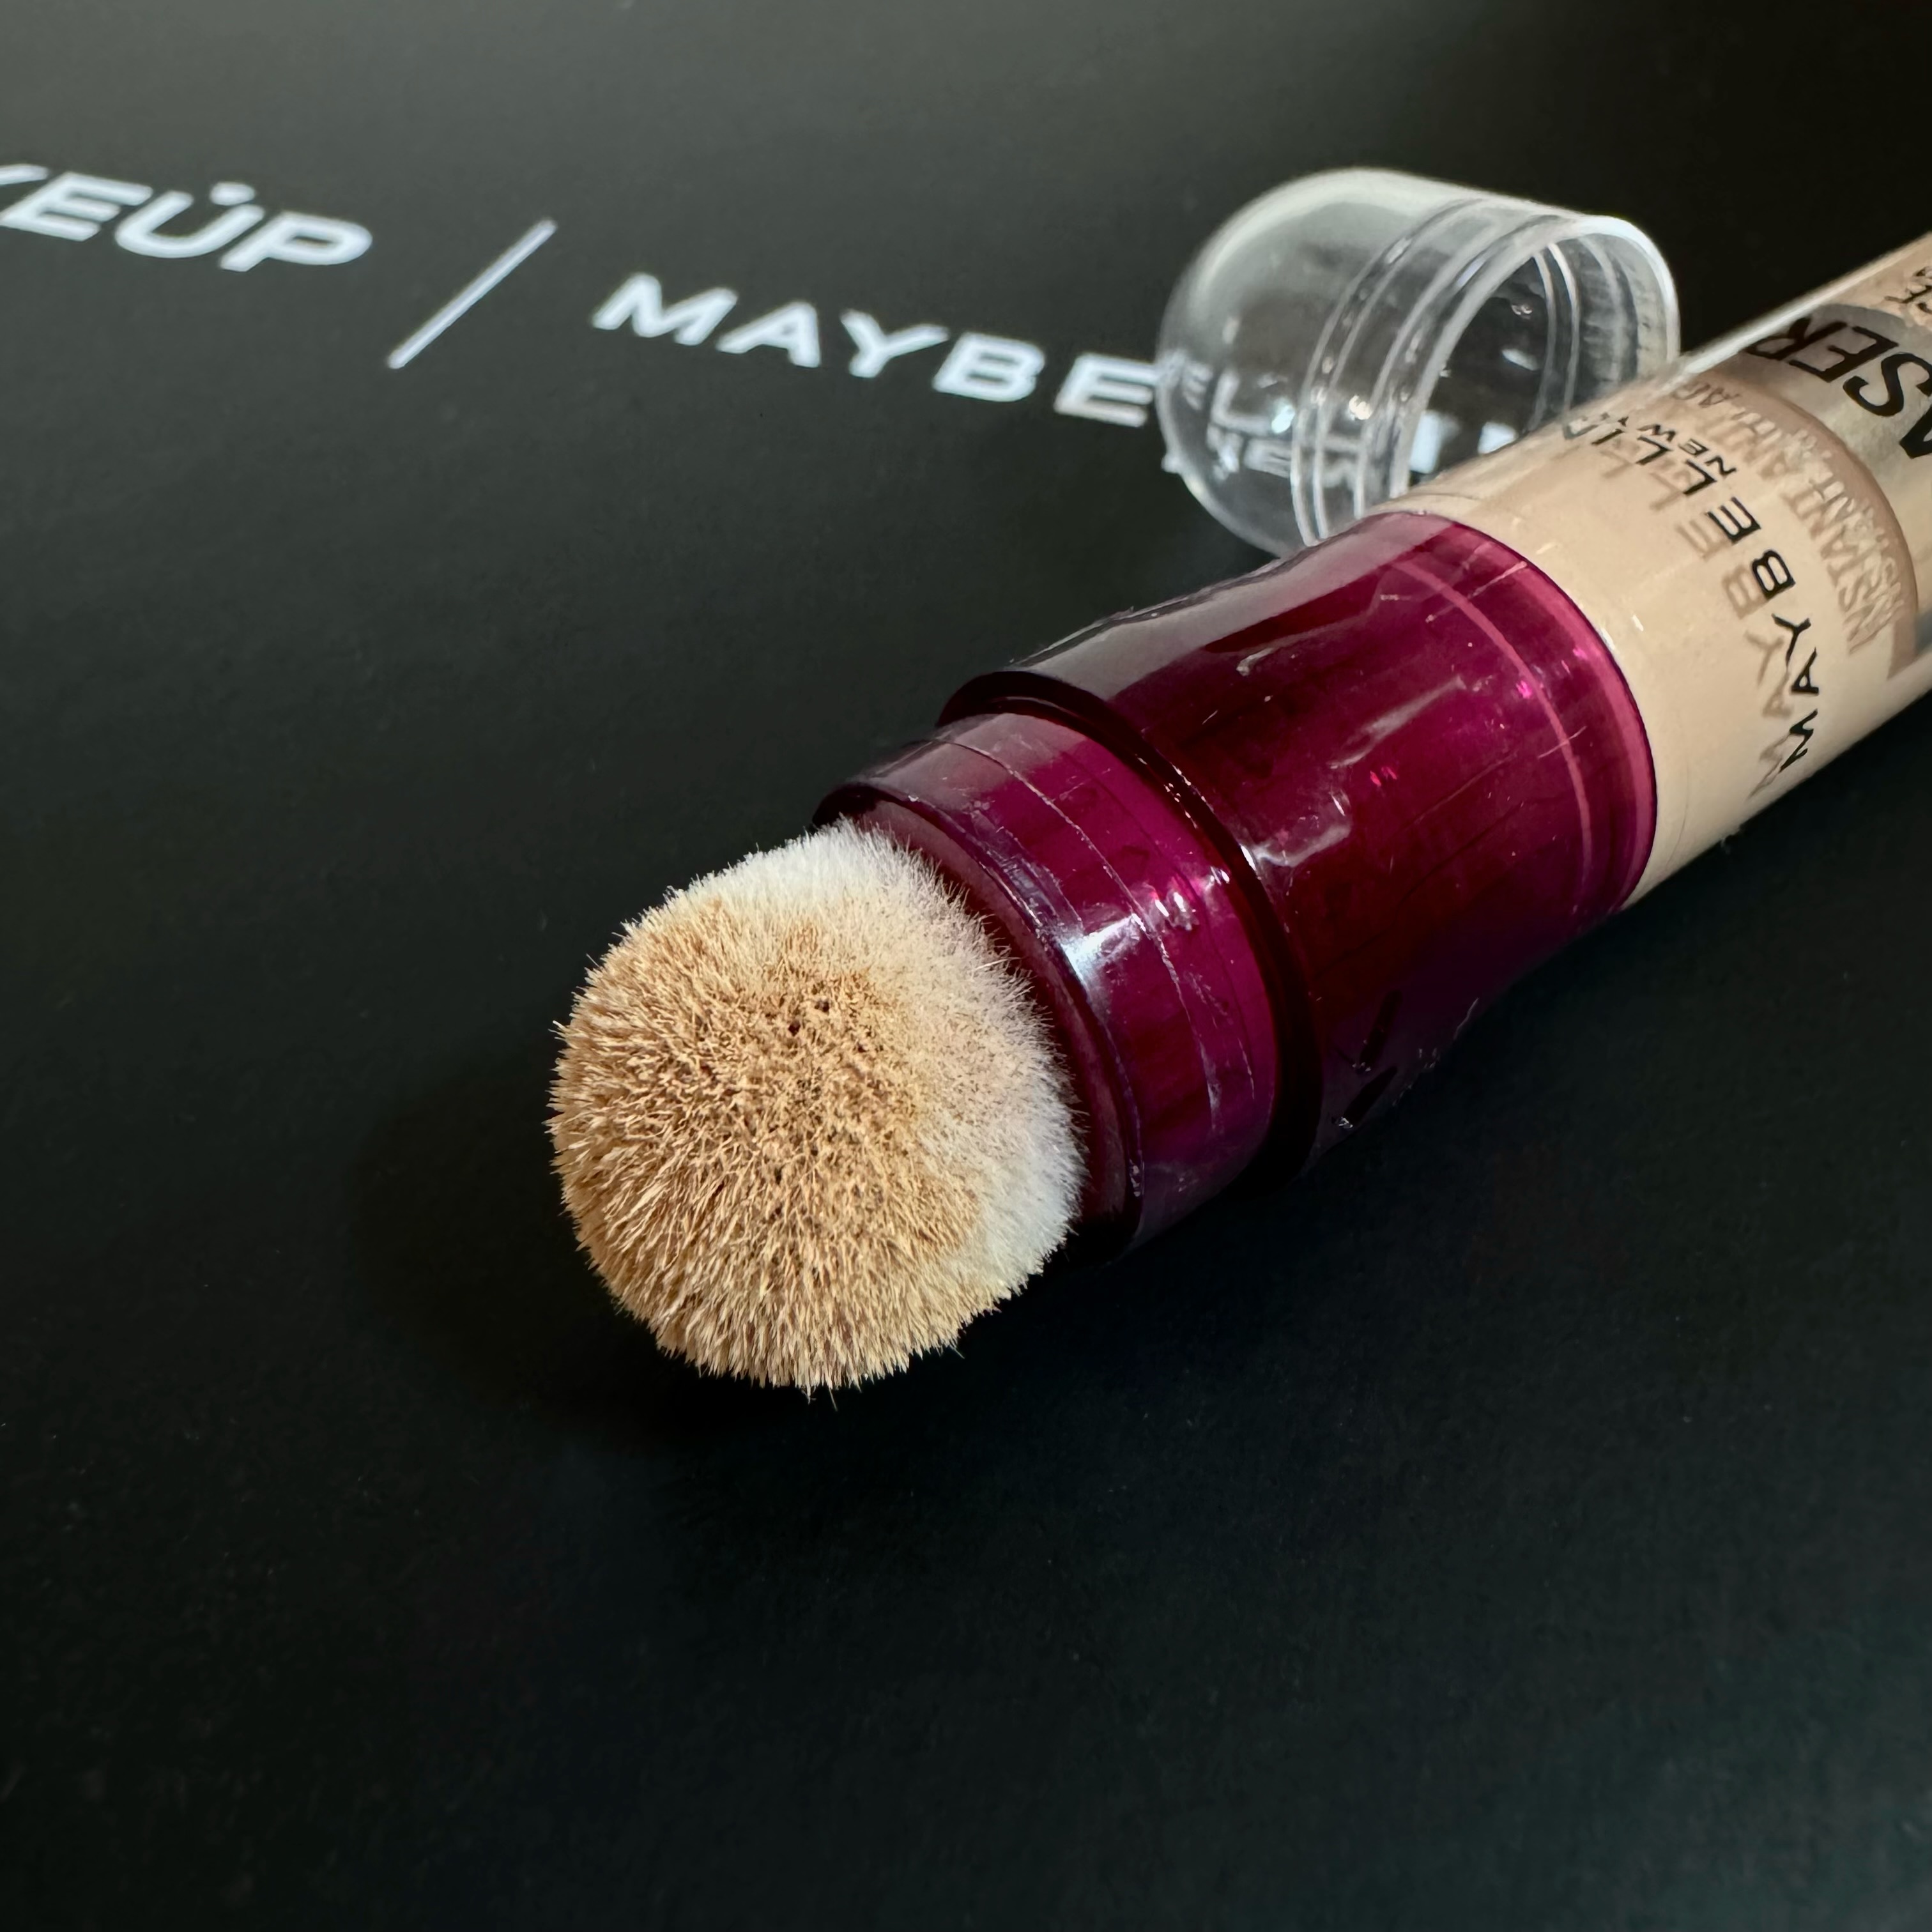 Maybelline New York Instant Eraser Multi-Use Concealer